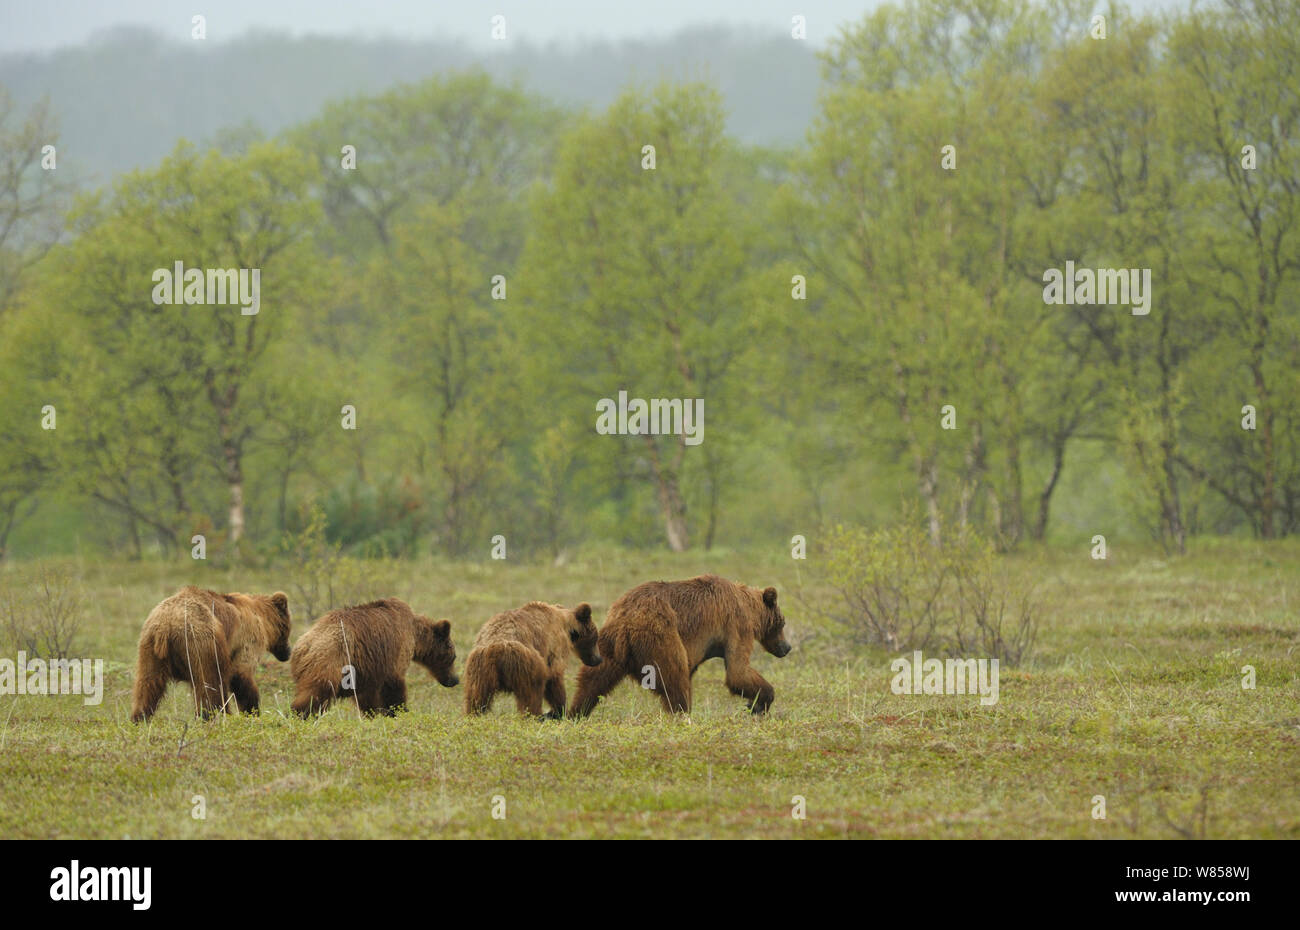 Kamchatka femelle brown bear (Ursus arctos beringianus) menant ses trois jeunes oursons. La réserve naturelle de Kronotsky Zapovednik, péninsule du Kamchatka, Extrême-Orient russe, juillet. Banque D'Images